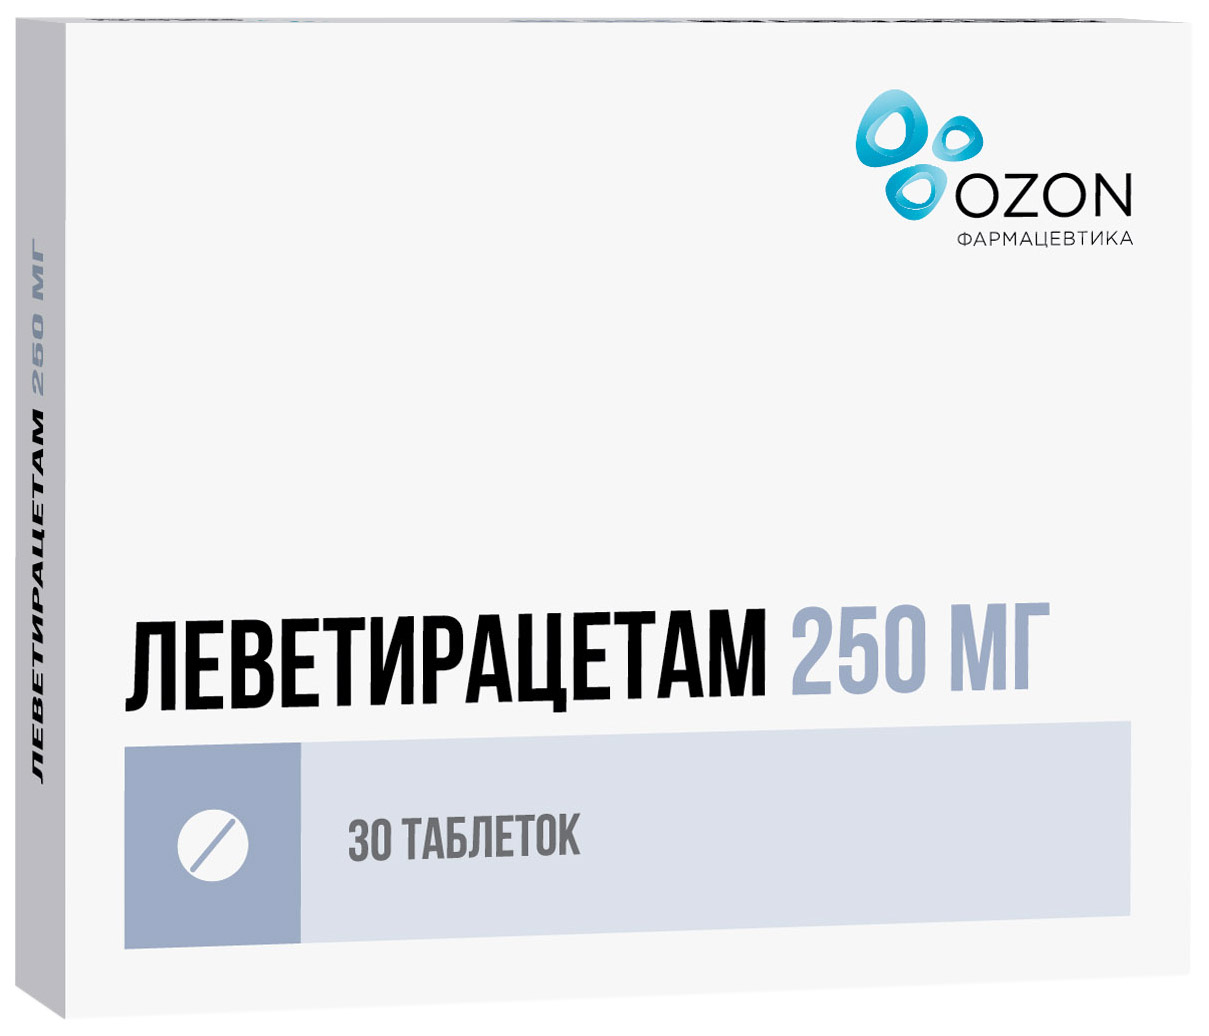 Купить Леветирацетам таблетки 250 мг 30 шт., Озон ООО, Россия